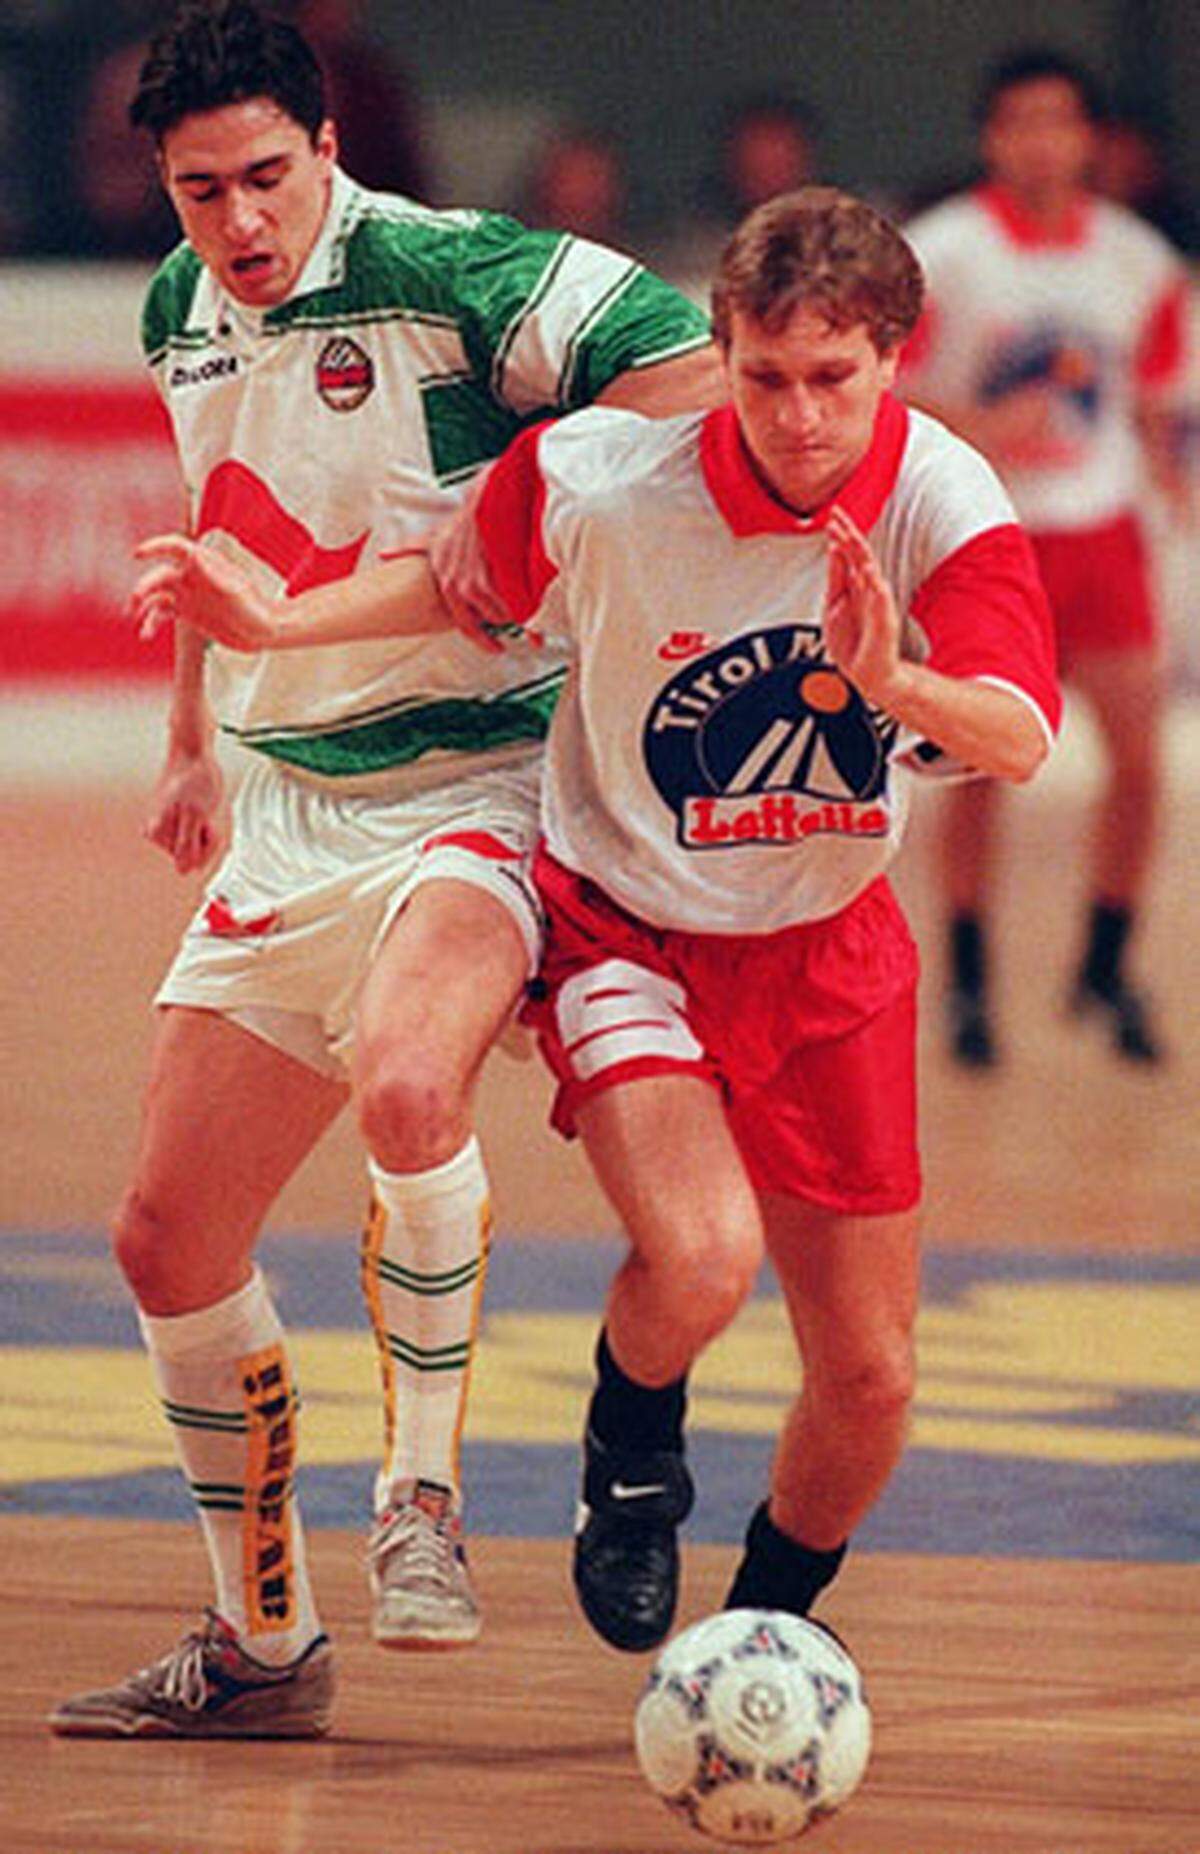 16 Tore erzielte der Stürmer in der Saison 1992/93 für den Wiener Sportclub, im Sommer wechselte er zum FC Tirol Innsbruck. Teamchef Herbert Prohaska berief ihn im Mai 1993 in den Kader für das WM-Quali-Spiel in Schweden. In den neun Minuten, die er mitspielen durfte, konnte Janeschitz den 0:1-Rückstand nicht drehen. Österreich verlor, Janeschitz' Teamkarriere endete an diesem Tag.